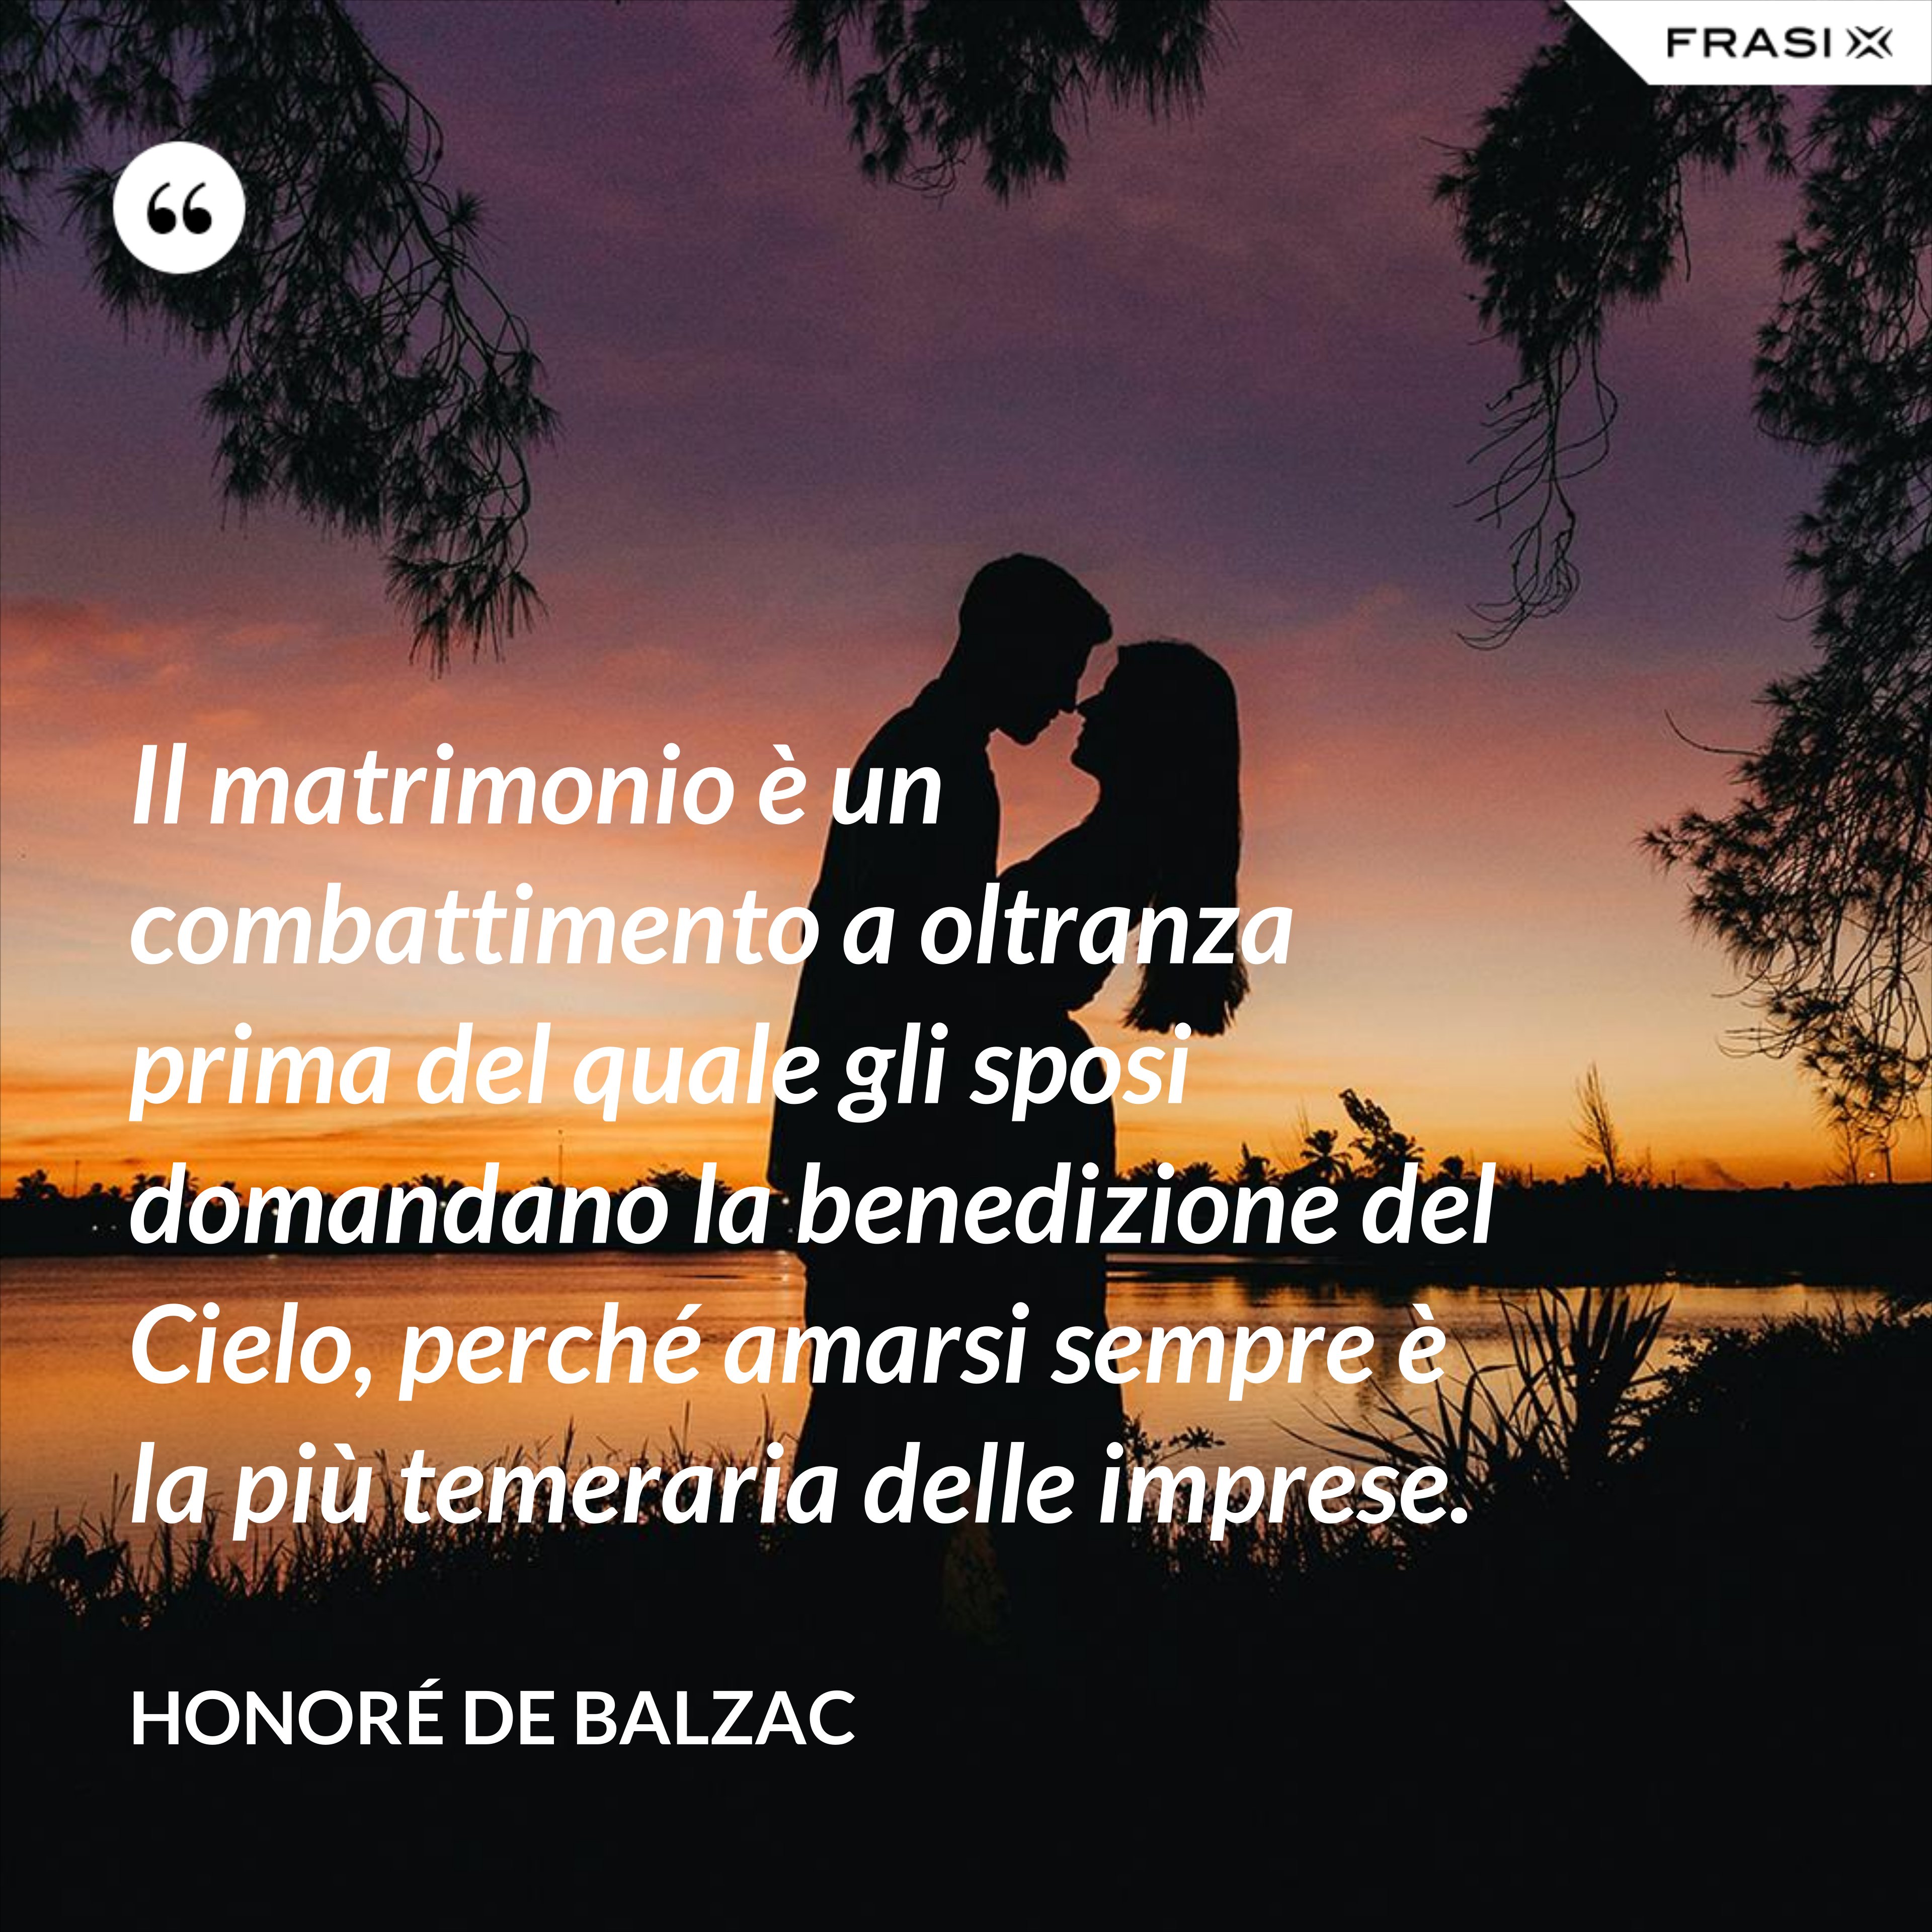 Il matrimonio è un combattimento a oltranza prima del quale gli sposi domandano la benedizione del Cielo, perché amarsi sempre è la più temeraria delle imprese. - Honoré de Balzac